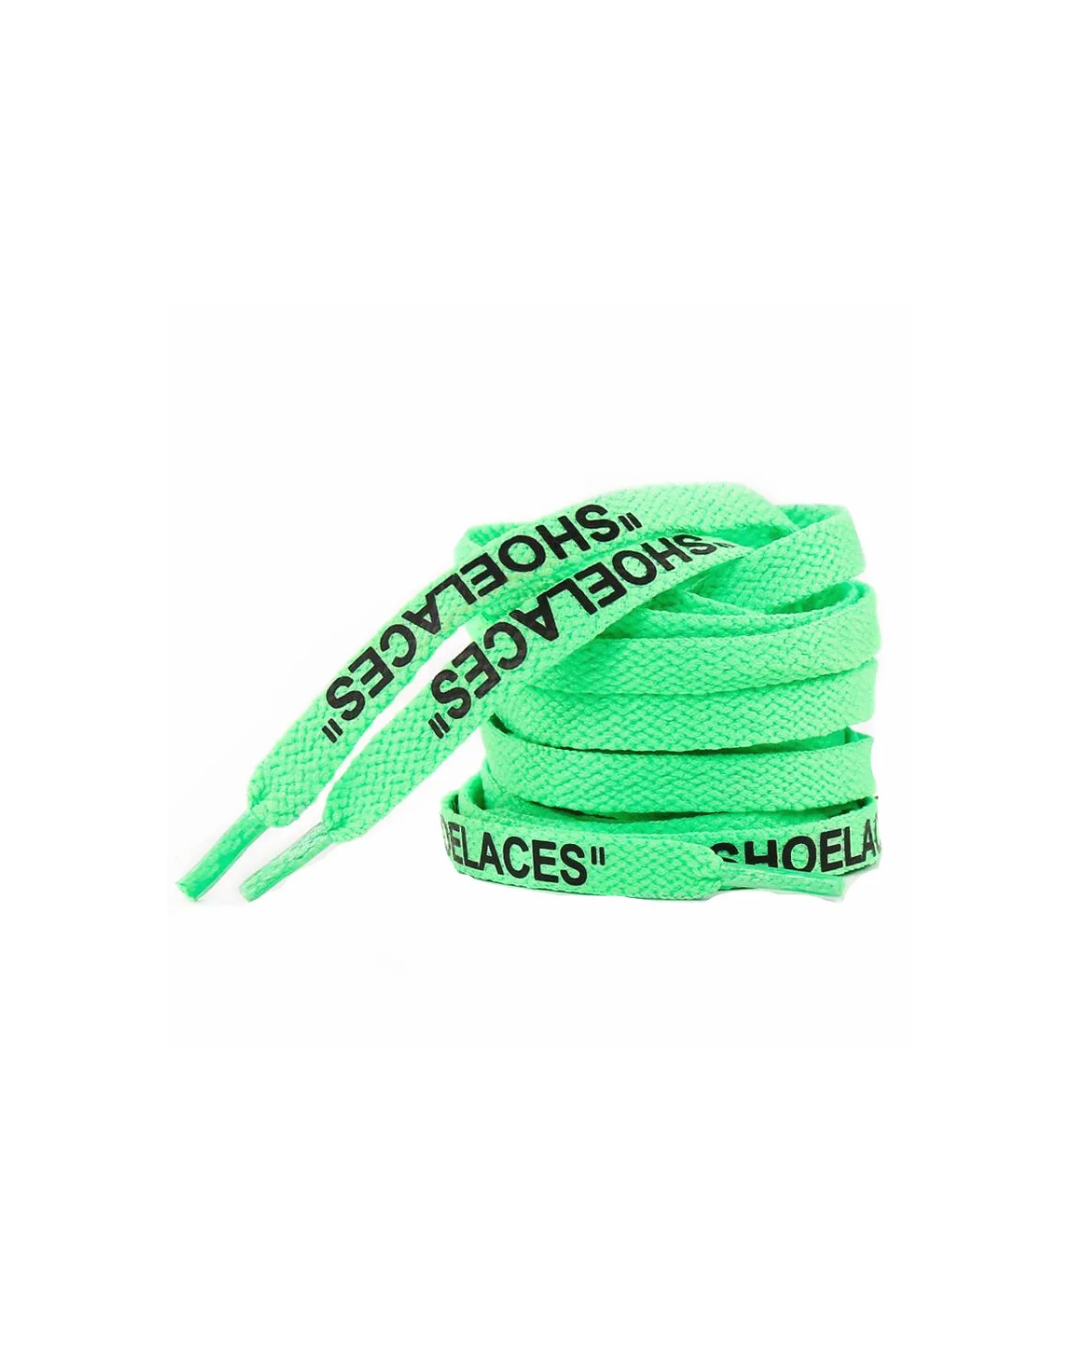 "SHOELACES" Laces Green/Black 